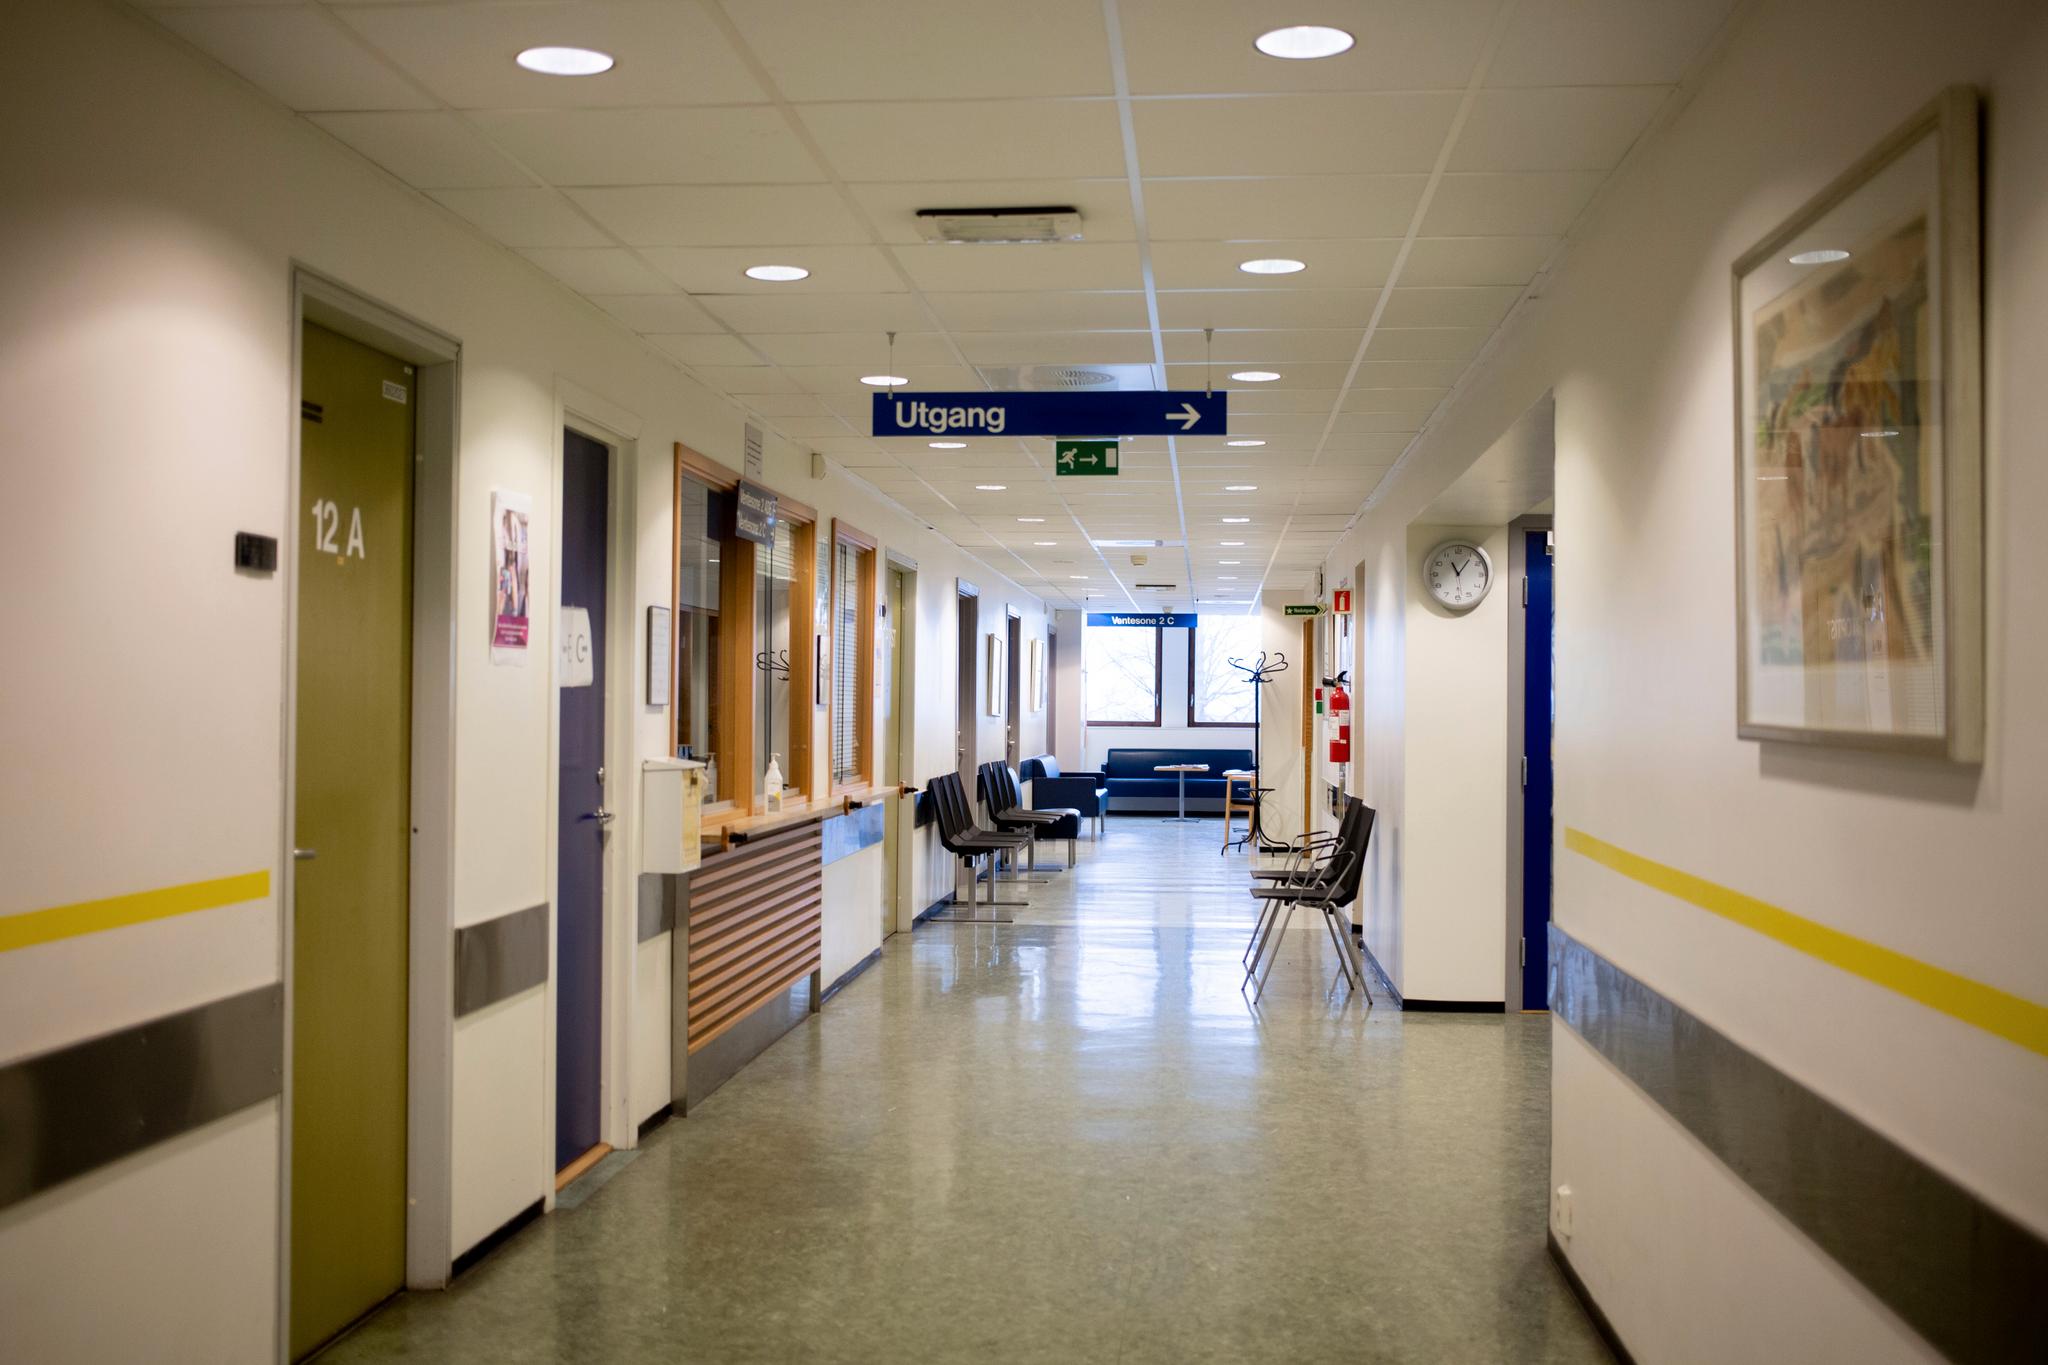 Øyeavdelingen ved Ullevål sykehus er stengt ettersom flere ansatte her er satt i karantene. Pågangen på norske sykehus kan bli stor i tiden som kommer, sier overlege ved Folkehelseinstituttet.